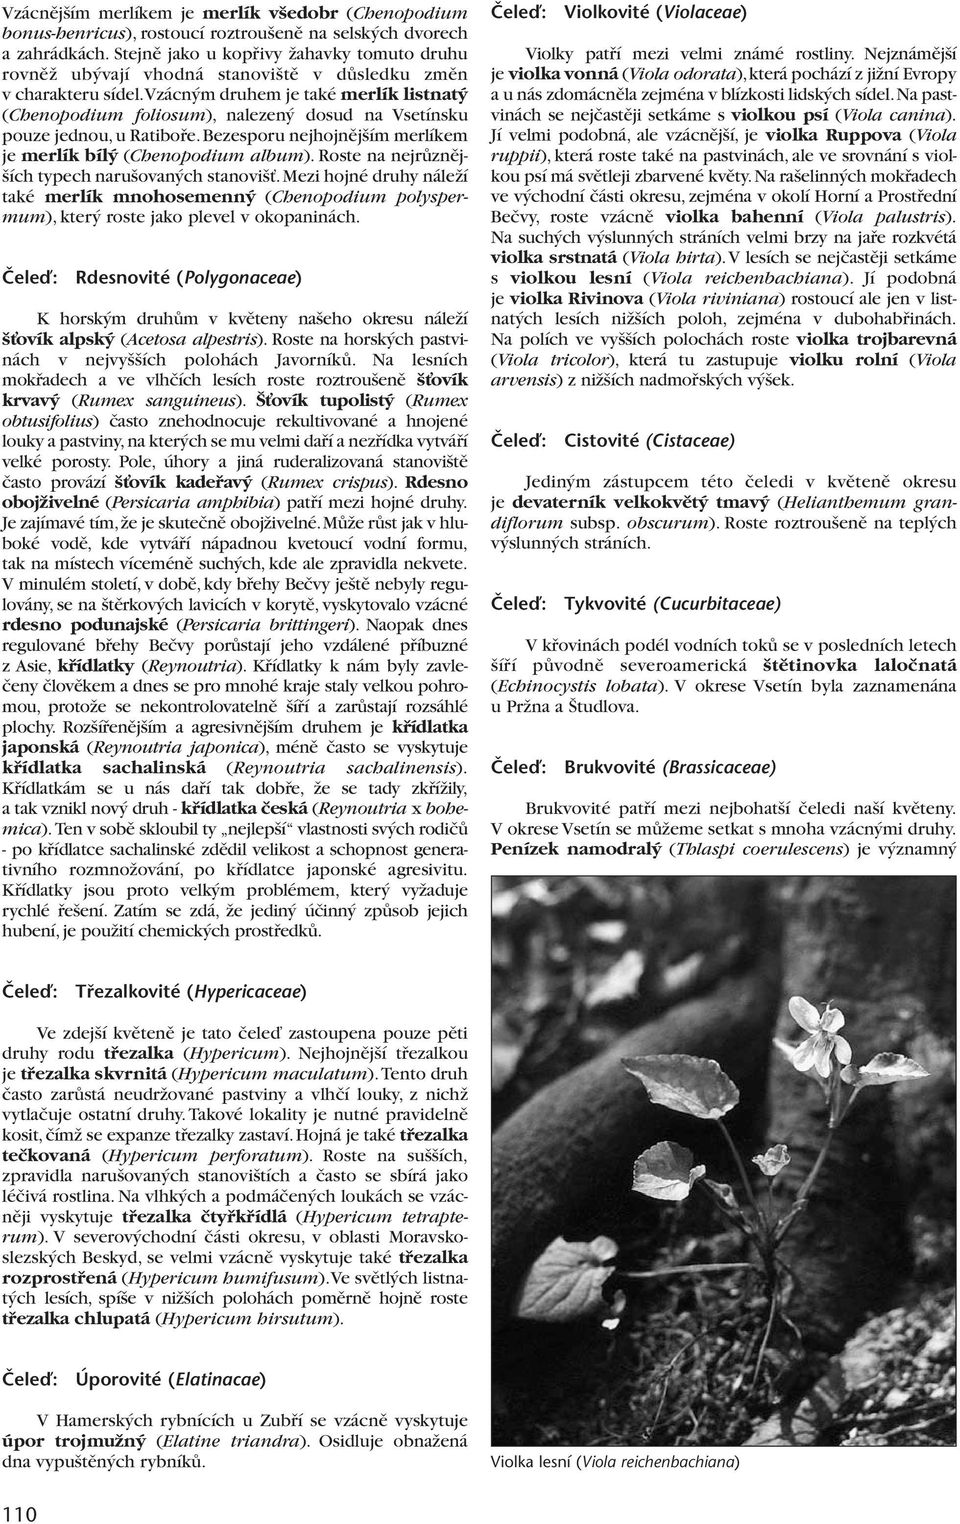 vzácn m druhem je také merlík listnat (Chenopodium foliosum), nalezen dosud na Vsetínsku pouze jednou,u Ratibofie.Bezesporu nejhojnûj ím merlíkem je merlík bíl (Chenopodium album).